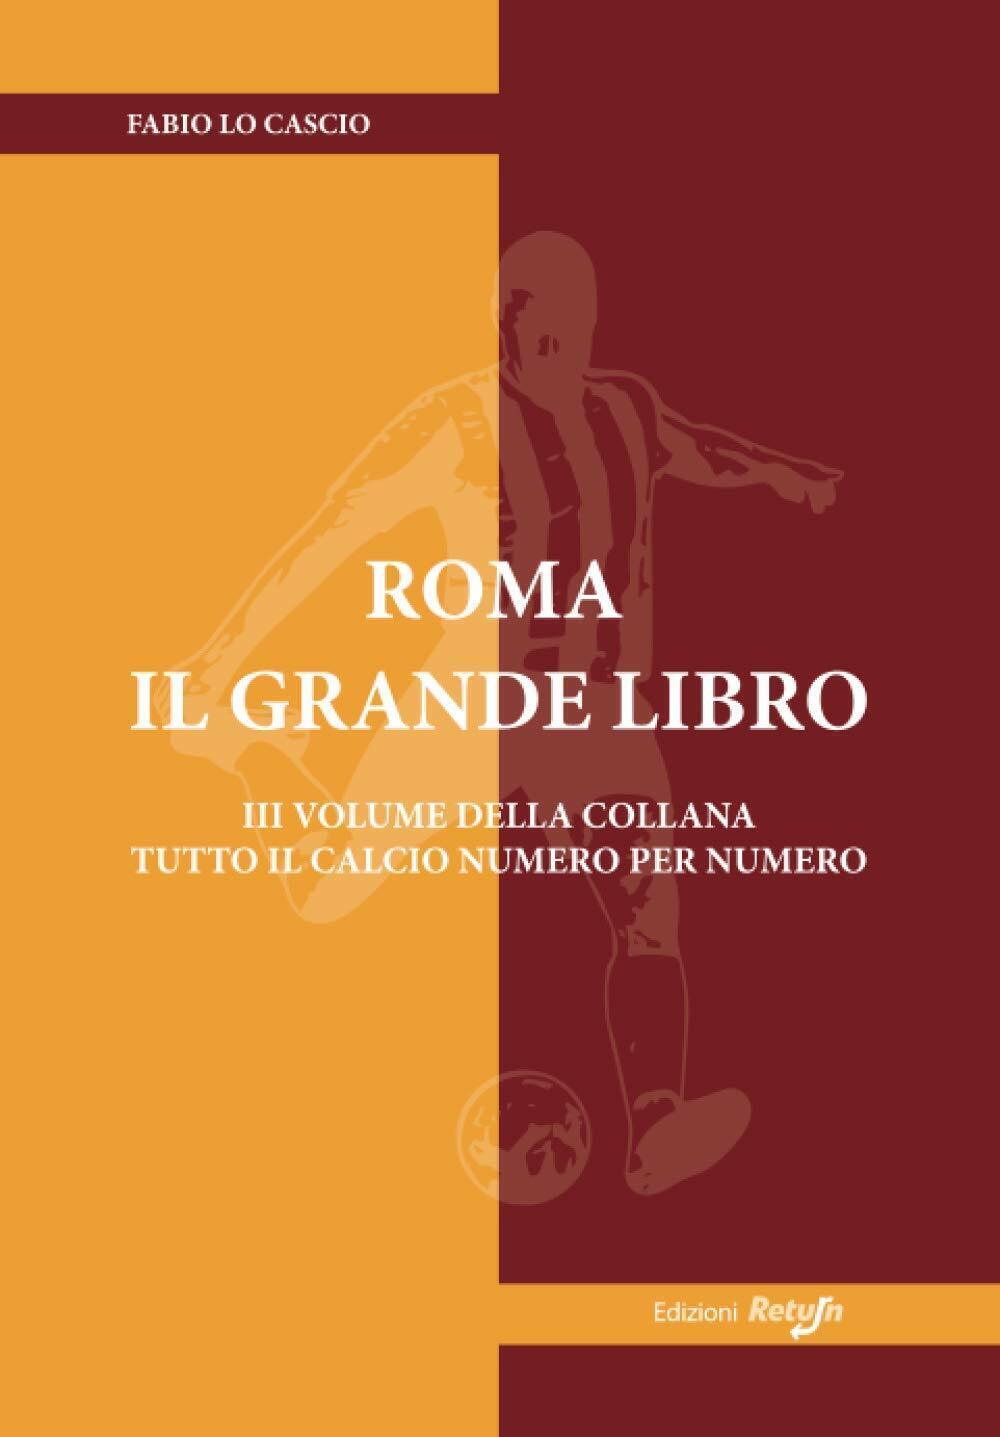 Roma il Grande Libro - Fabio Lo Cascio Return, 2019 libro usato